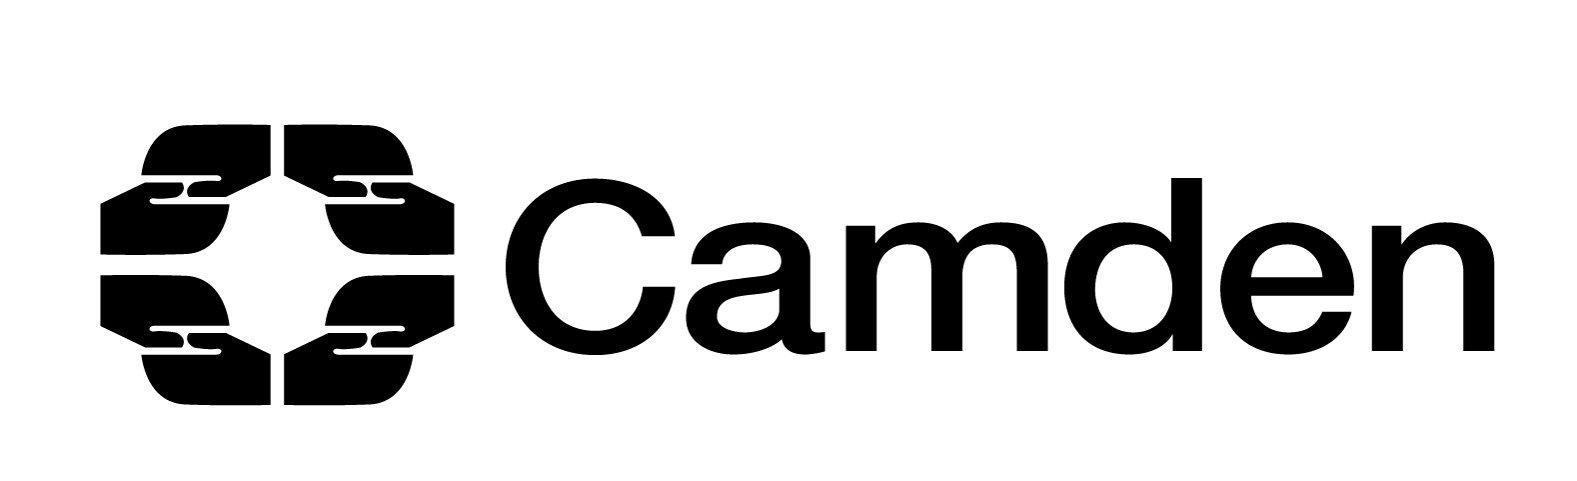 Camden Logo - Camden Council is Recruiting a Volunteer Coordinator